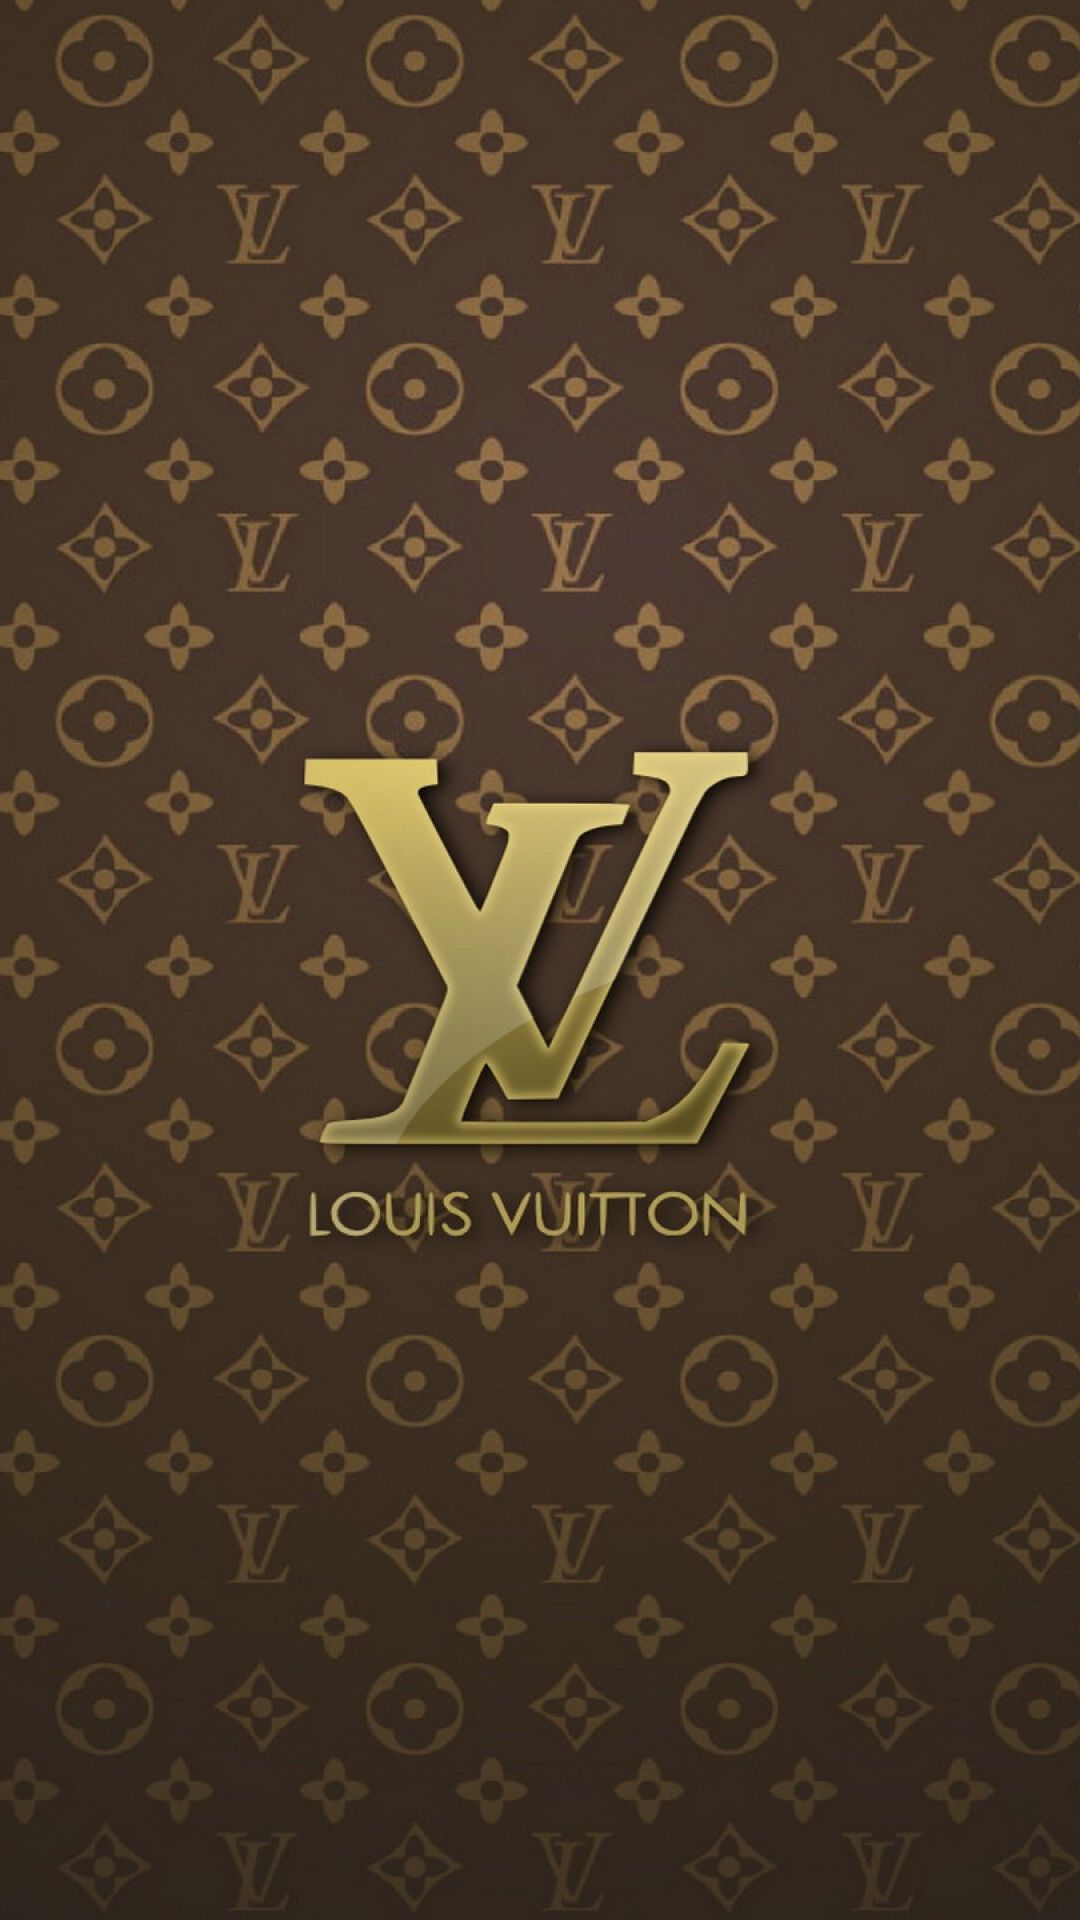 Fondos de Louis Vuitton para iPhone - Los mejores fondos gratuitos de Louis Vuitton para iPhone